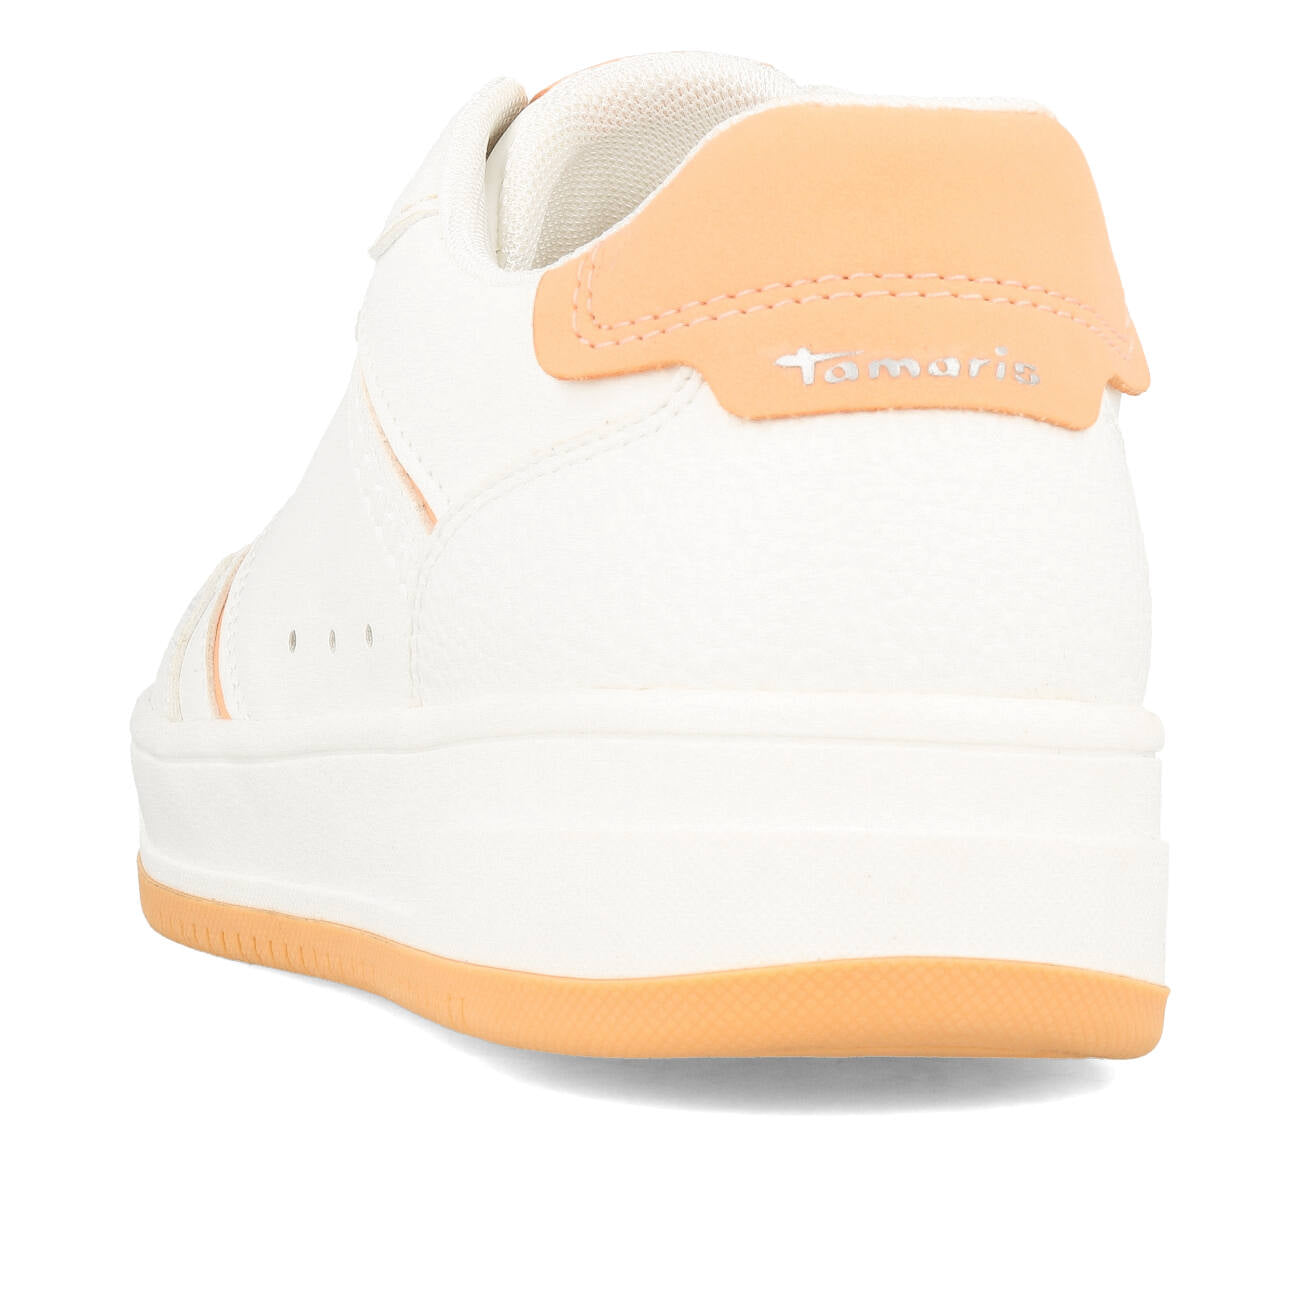 Tamaris 1-23729-42-160 Sneaker Damen White Orange